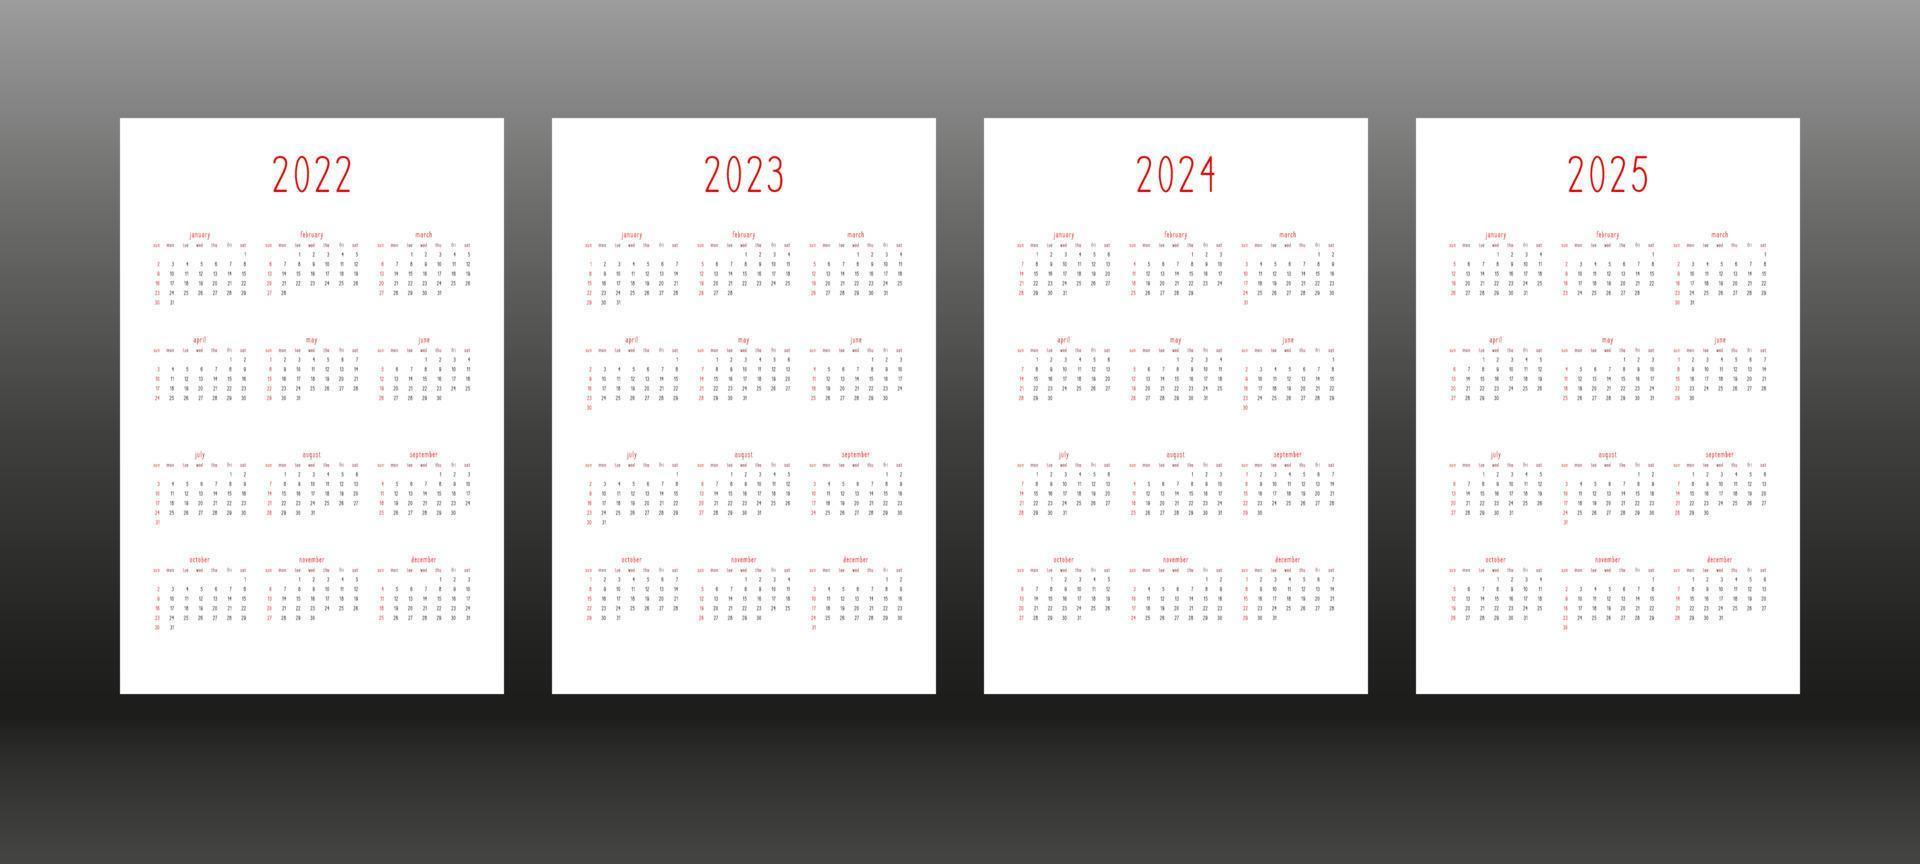 2022 2023 2024 2025 calendrier quotidien hebdomadaire mensuel modèle de journal de planificateur personnel dans un style minimaliste mignon. calendrier individuel pour les ordinateurs portables. la semaine commence le dimanche vecteur